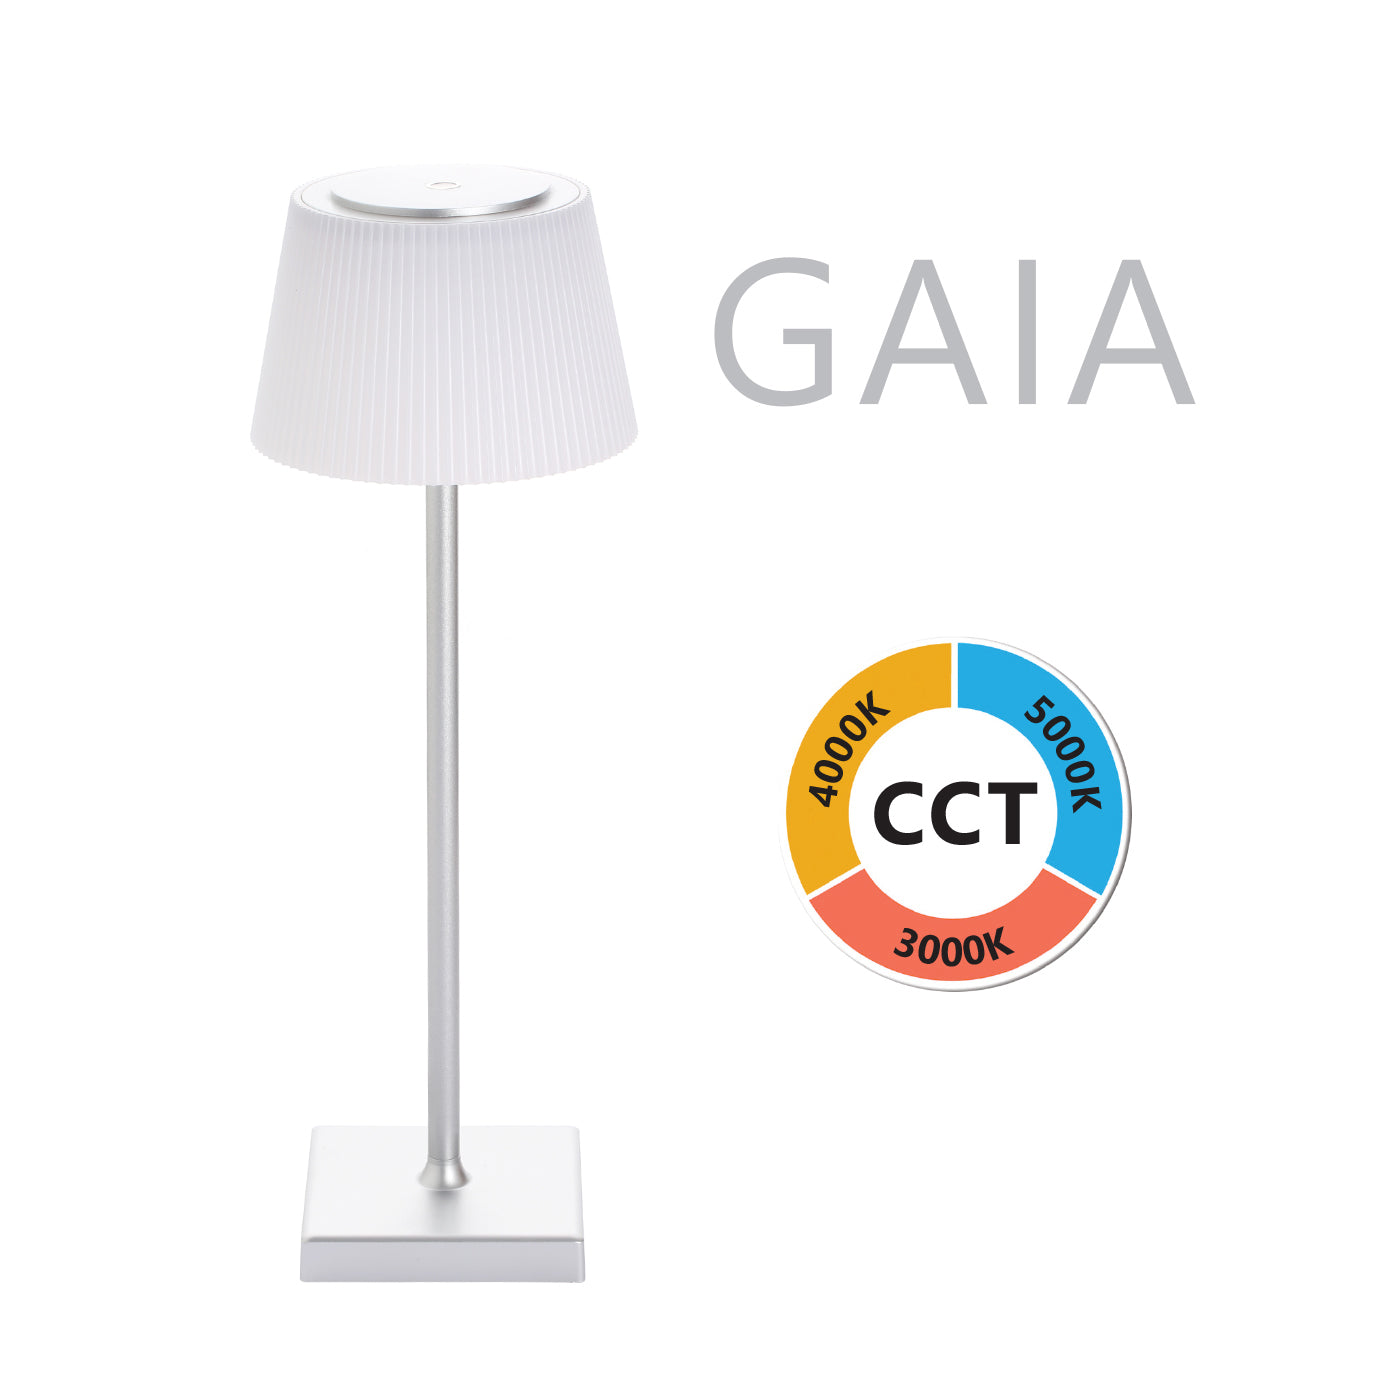 Gaia-Lampada LED da tavolo CCT, dimmerabile